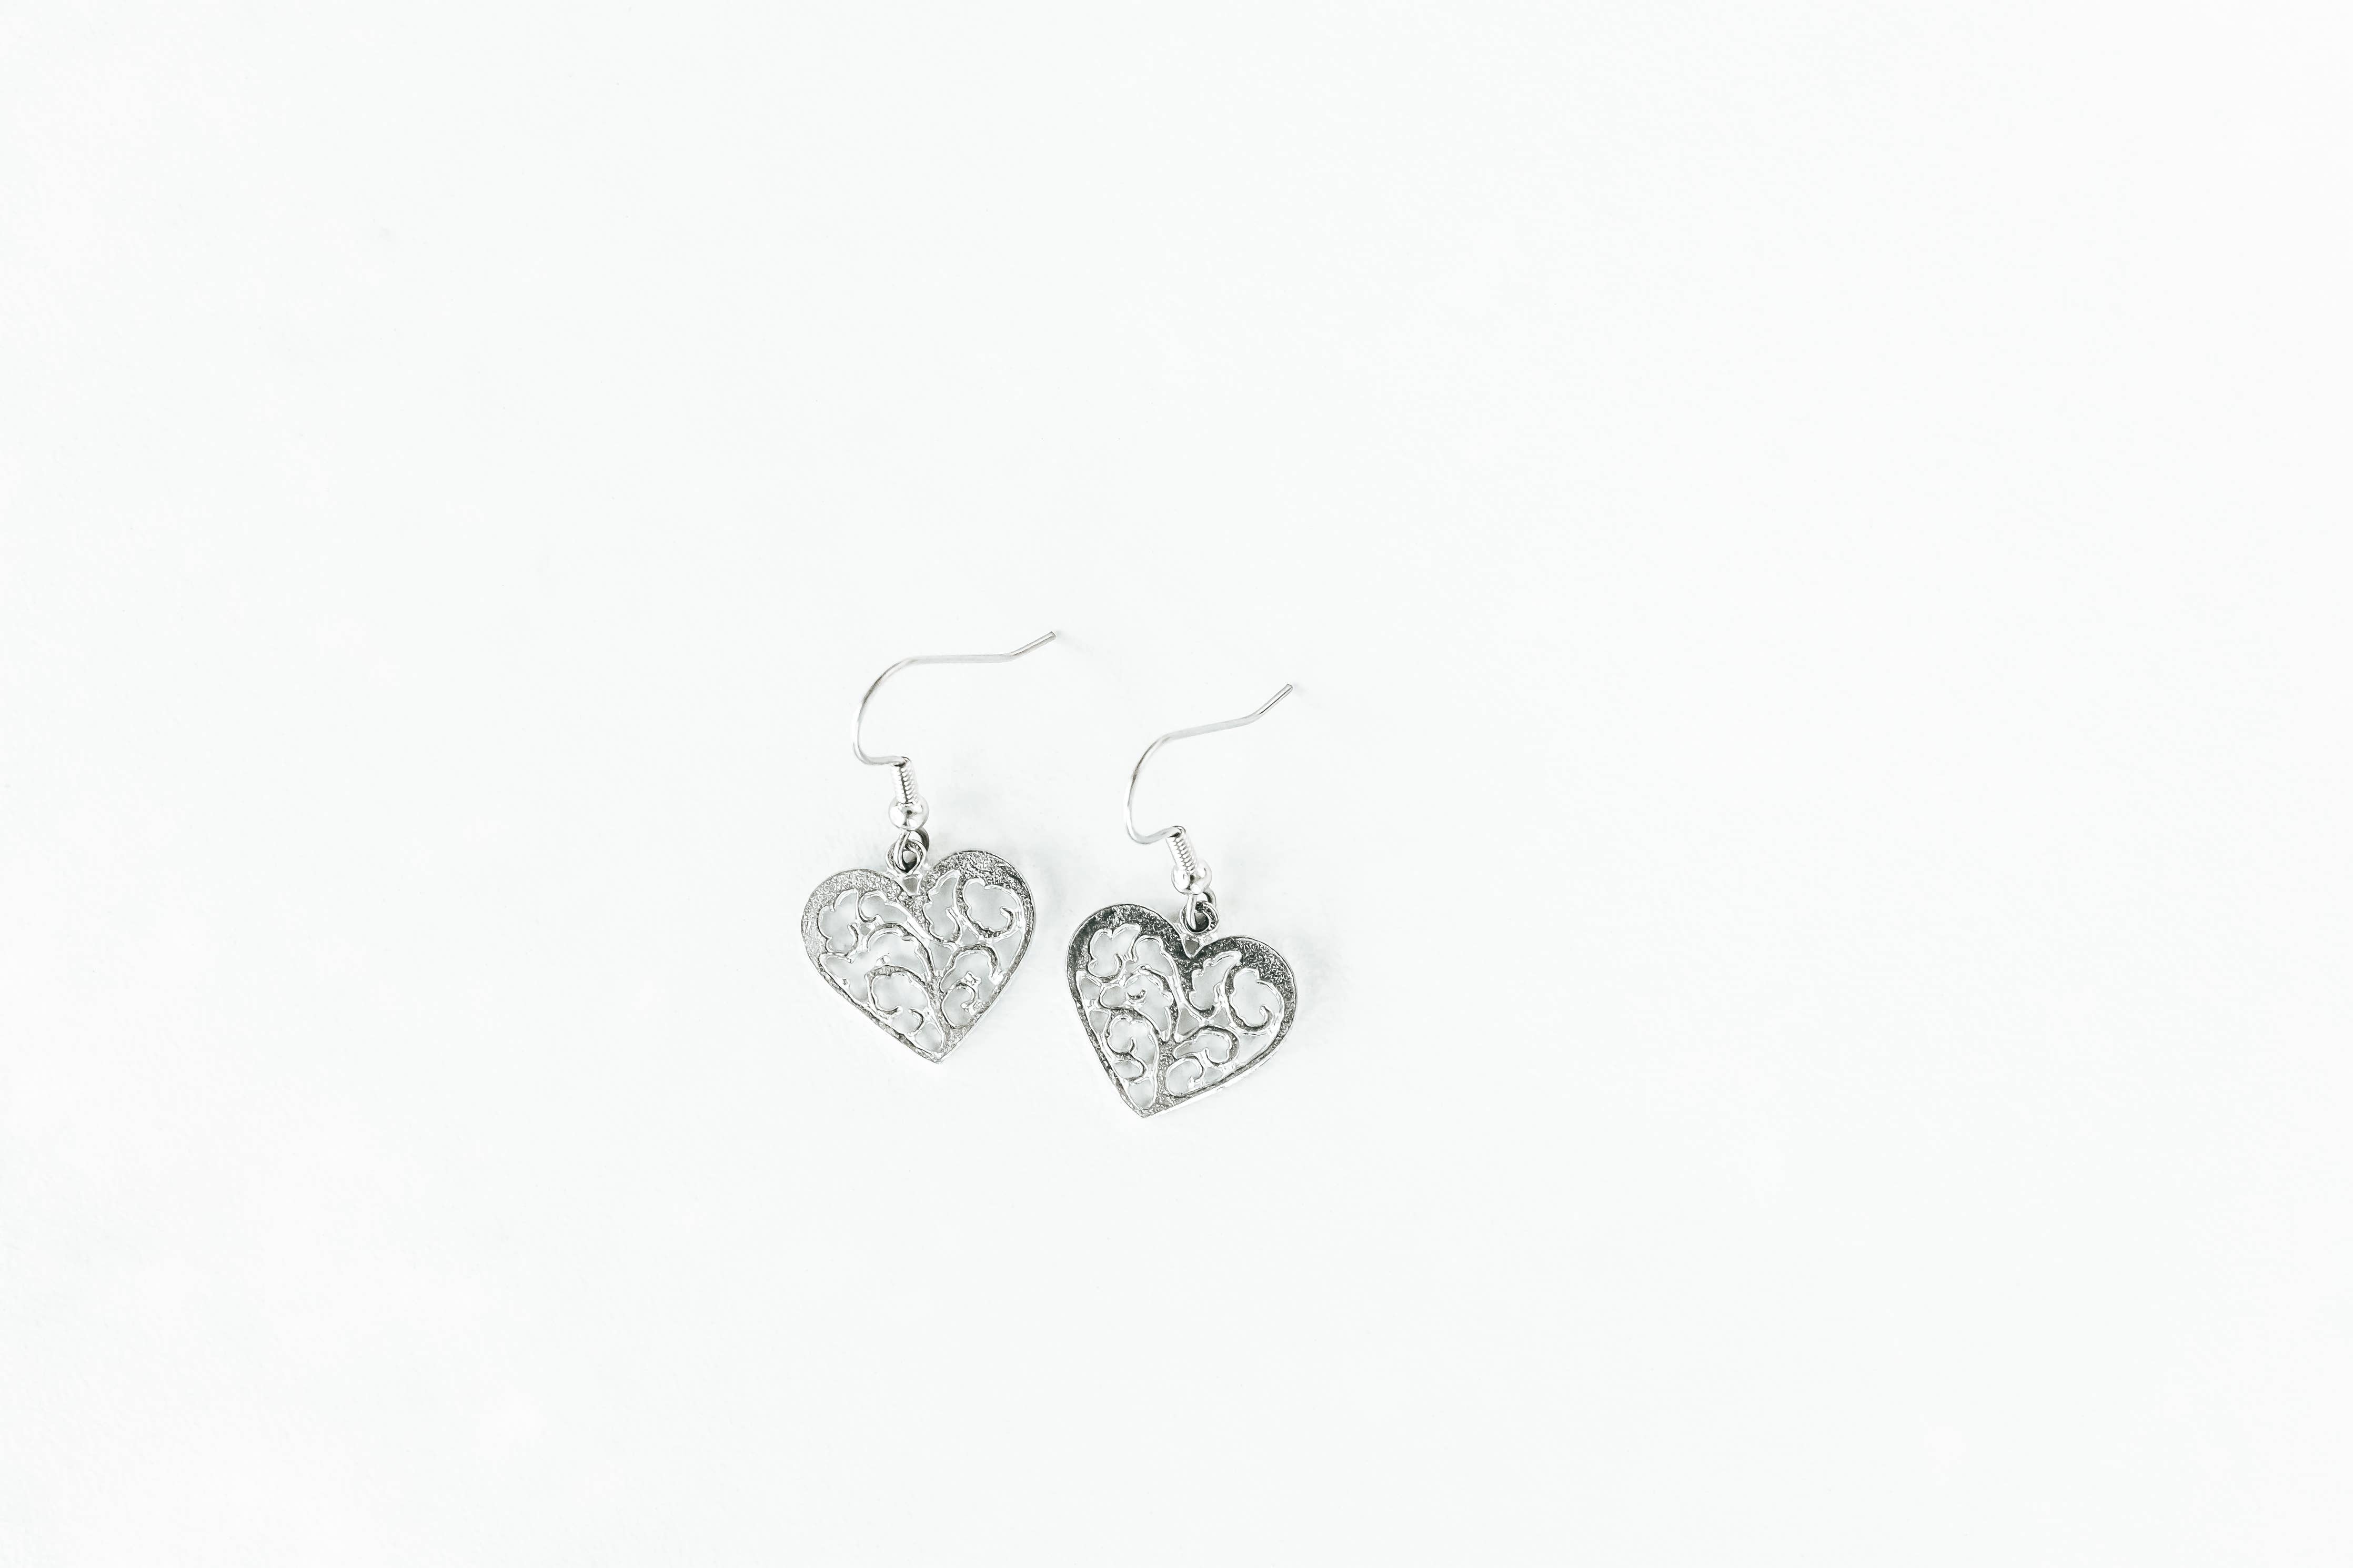 Swirly Heart Earrings - Love Gift for Women